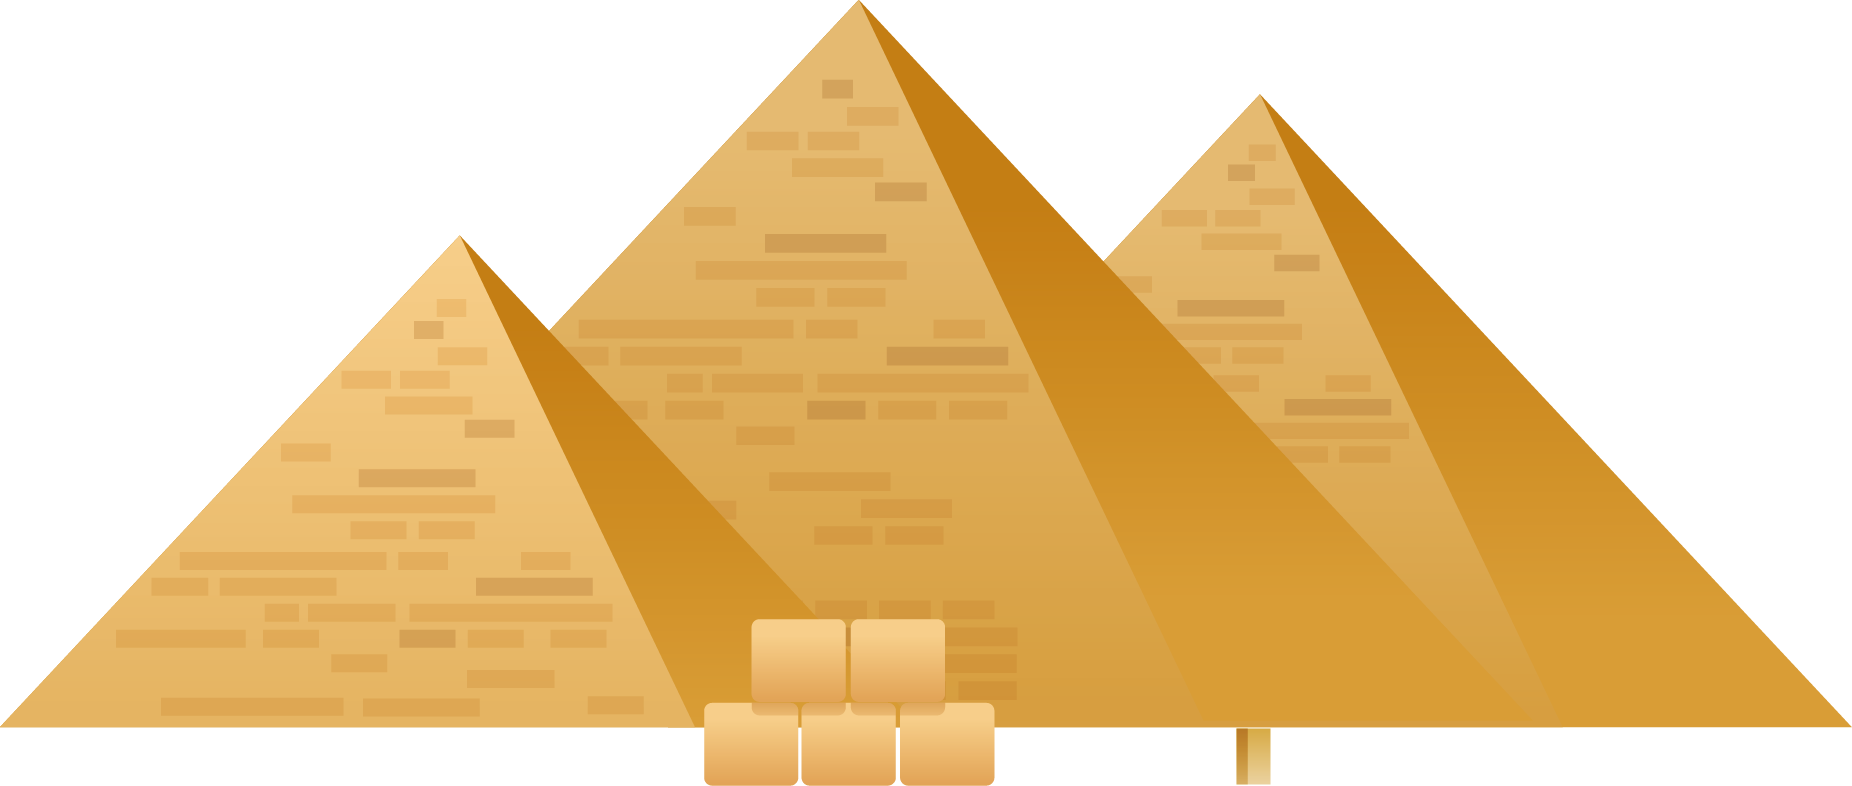 Imagens transparentes de pirâmide